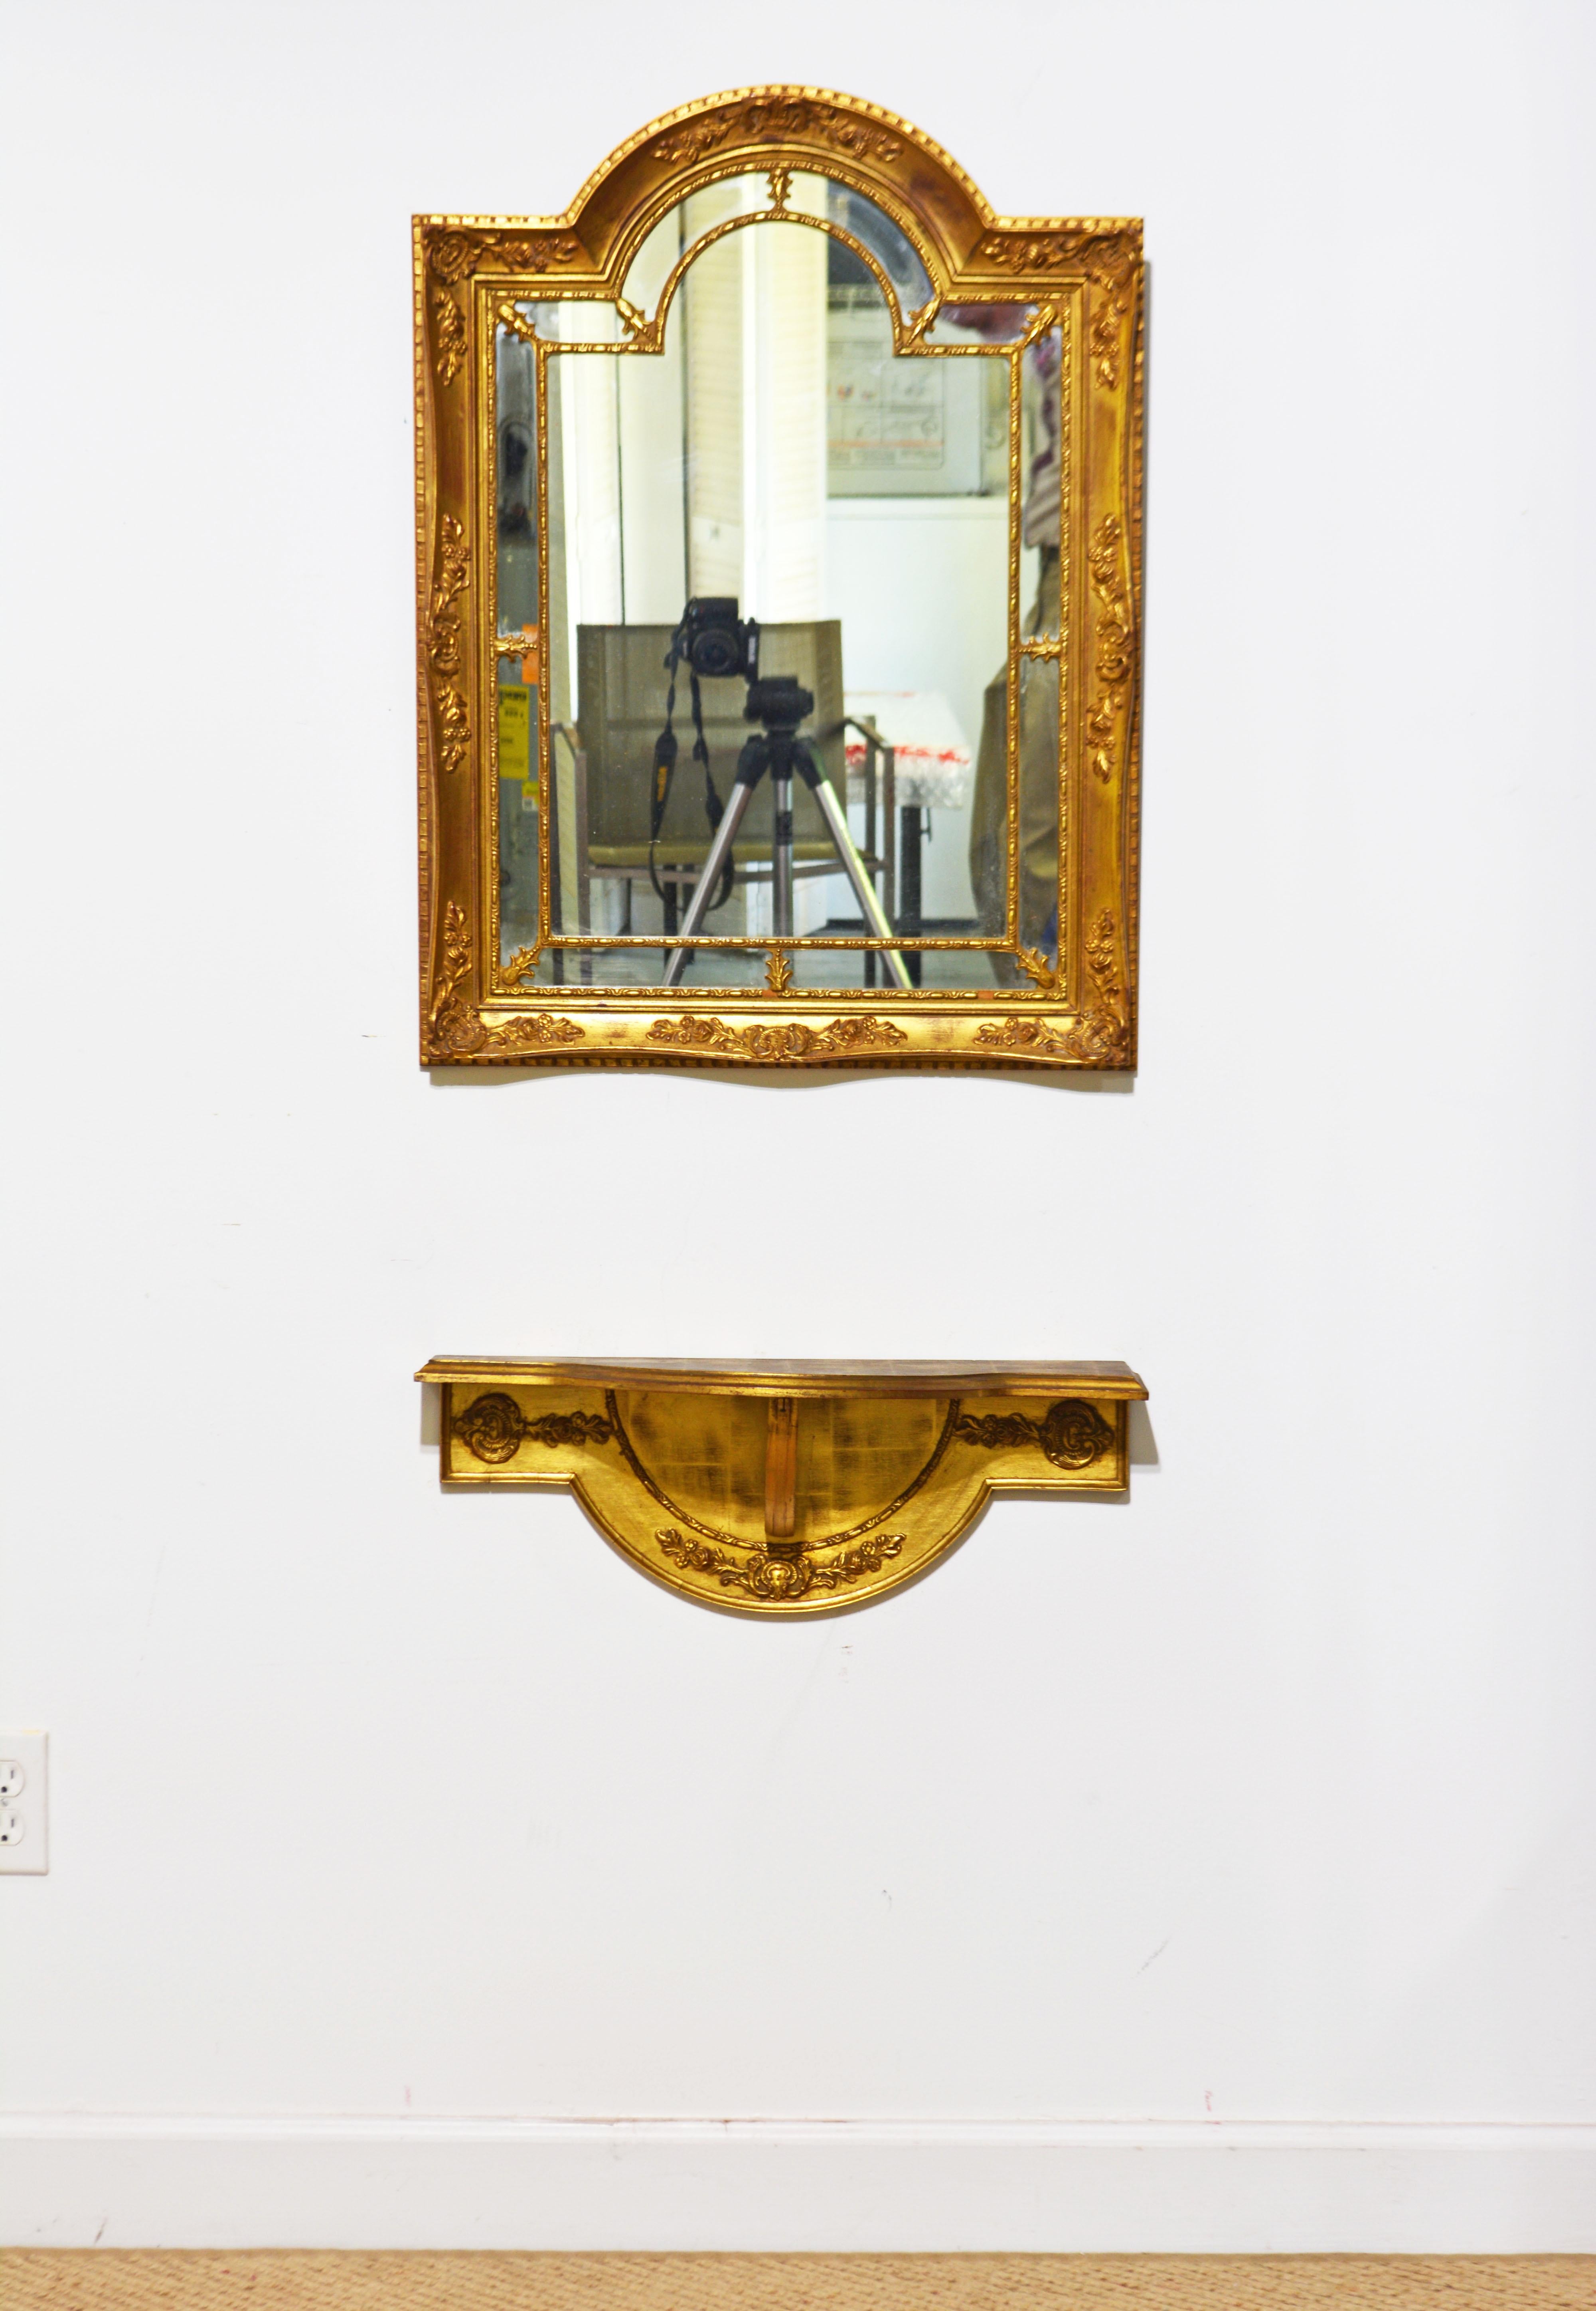 Ce miroir et cette console murale en bois doré de style Louis XVI ont été fabriqués en Belgique pour La Barge. Il présente un cadre magnifiquement orné avec un sommet arqué et un miroir orné de panneaux intérieurs séparés. Le motif de l'arche est